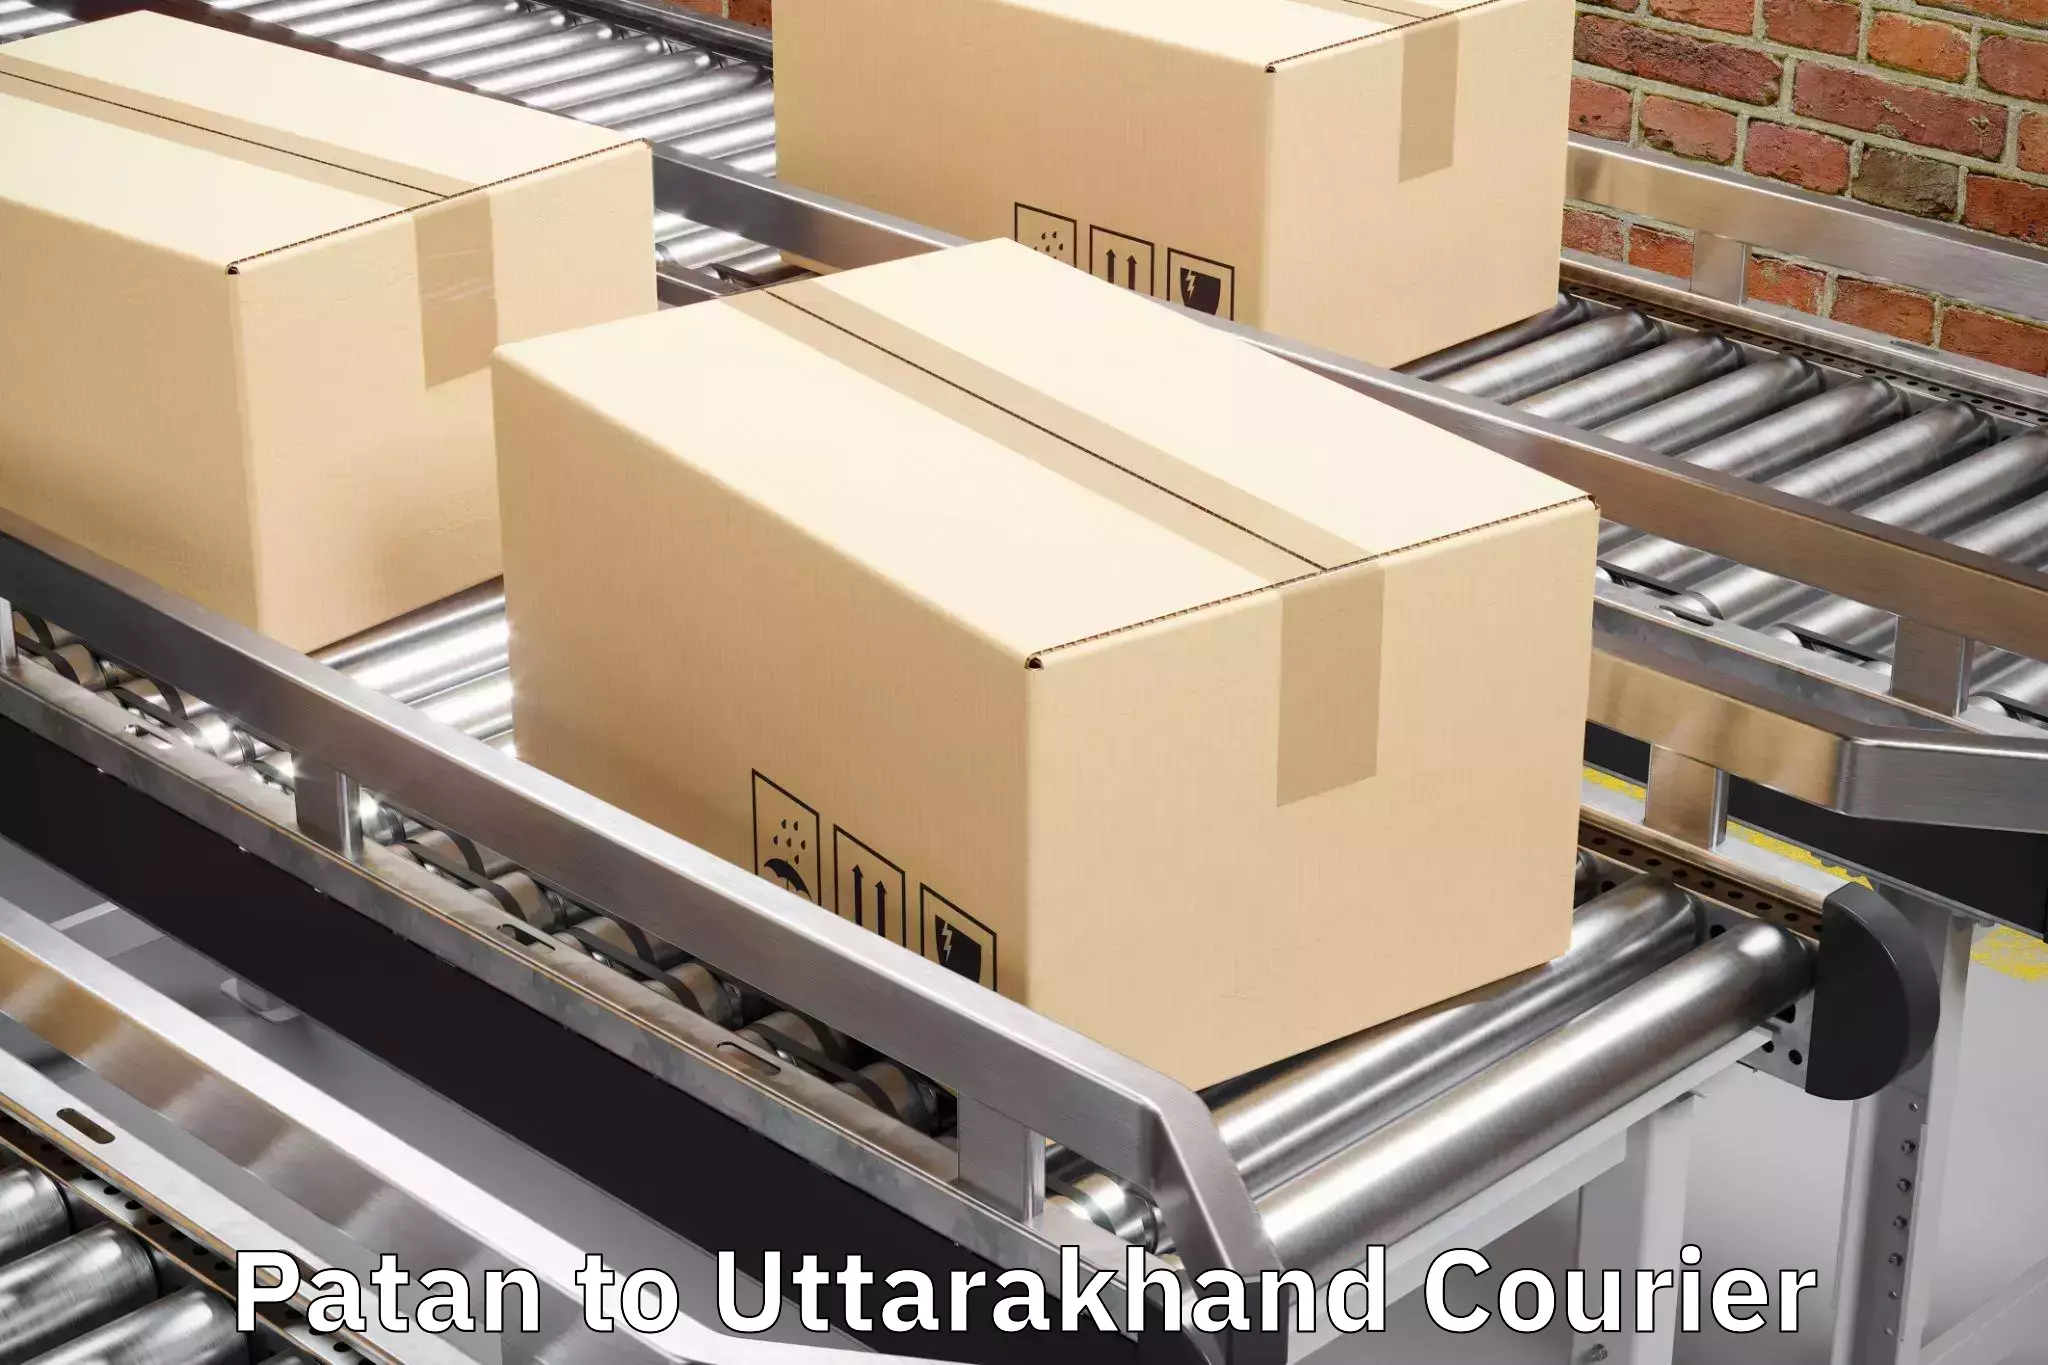 Automated luggage transport Patan to Uttarakhand